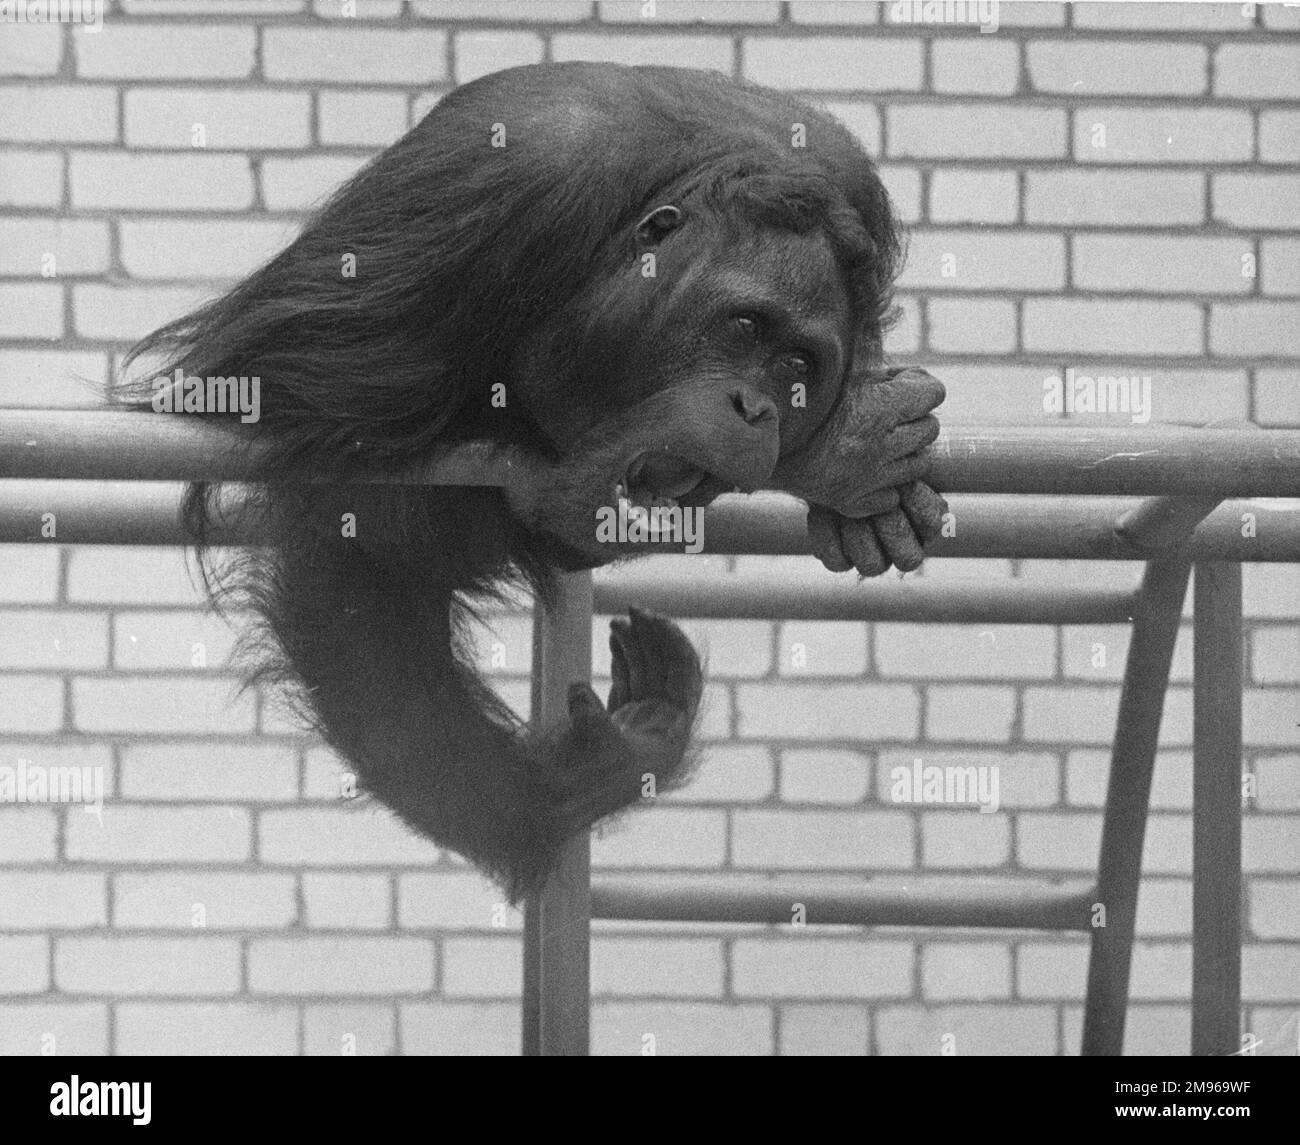 Ein Orang-Utan, der auf seinem Sitz im Zoo sitzt. Durch den heftigen Gesichtsausdruck scheint er verärgert oder verärgert zu sein. Stockfoto